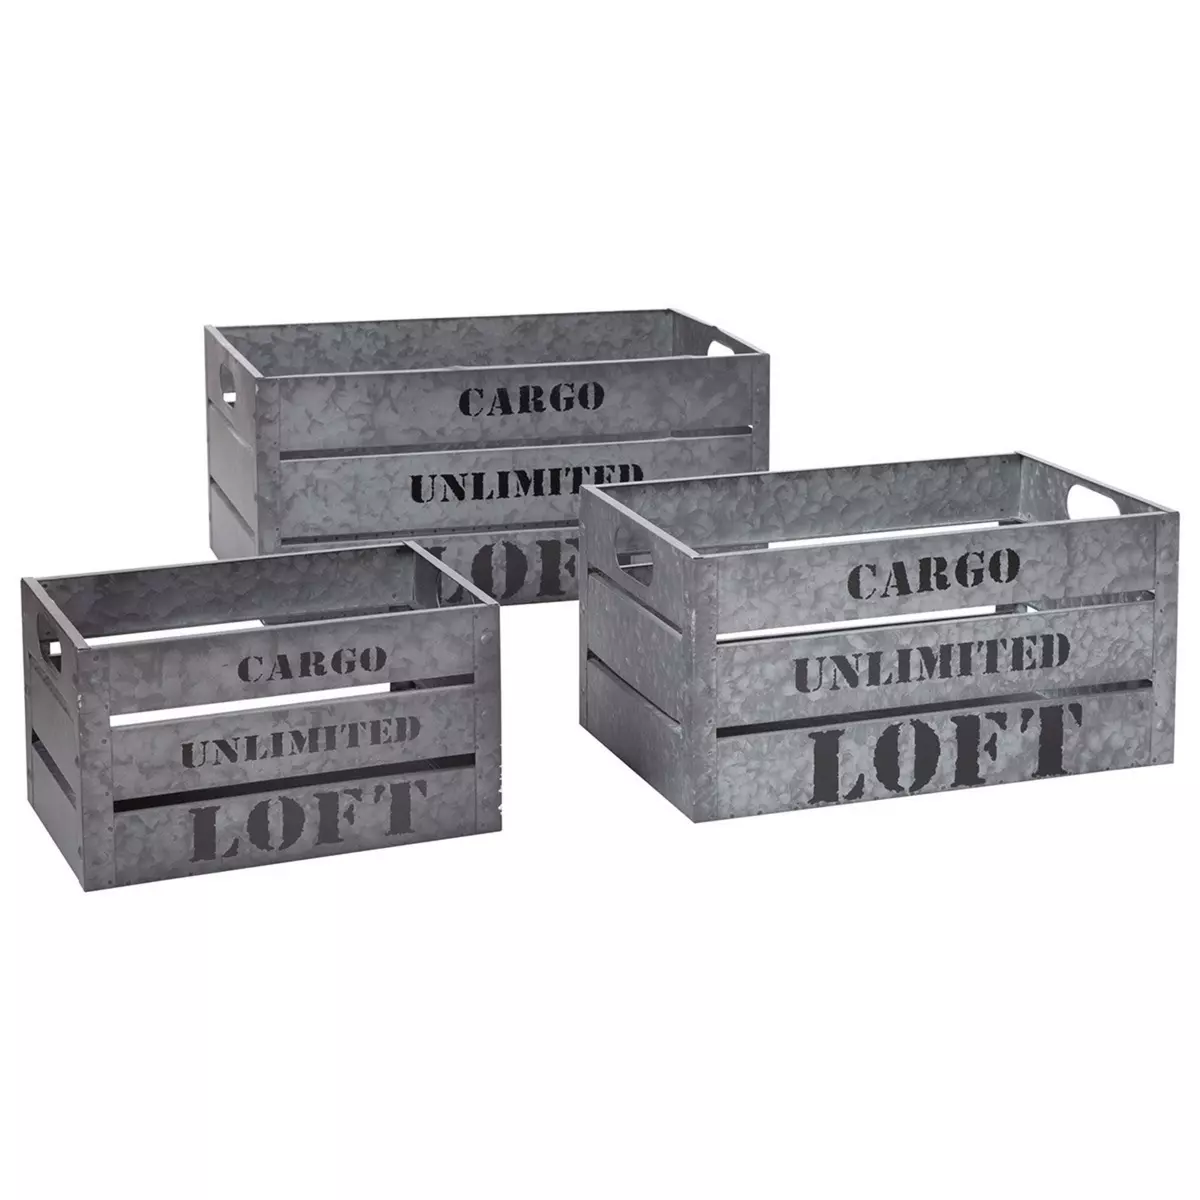 ATMOSPHERA Lot de 3 caisses cagettes Cargo silver